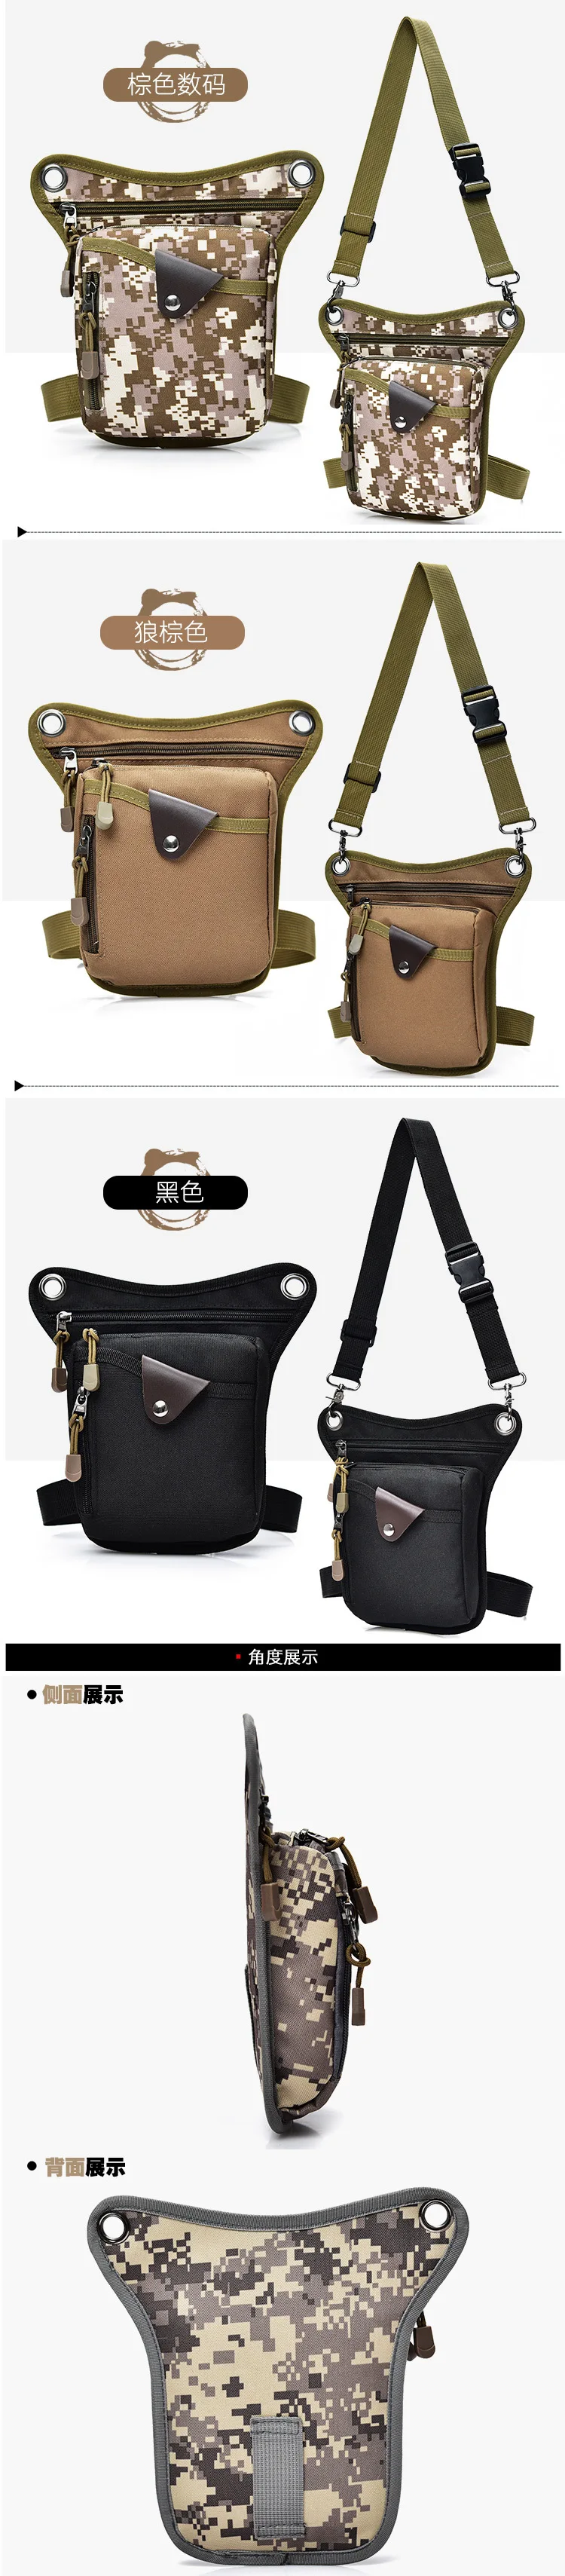 Высококачественная Мужская сумка, холщовые сумки с заниженной талией, набедренная сумка, мужская сумка с ремнем для велосипеда и